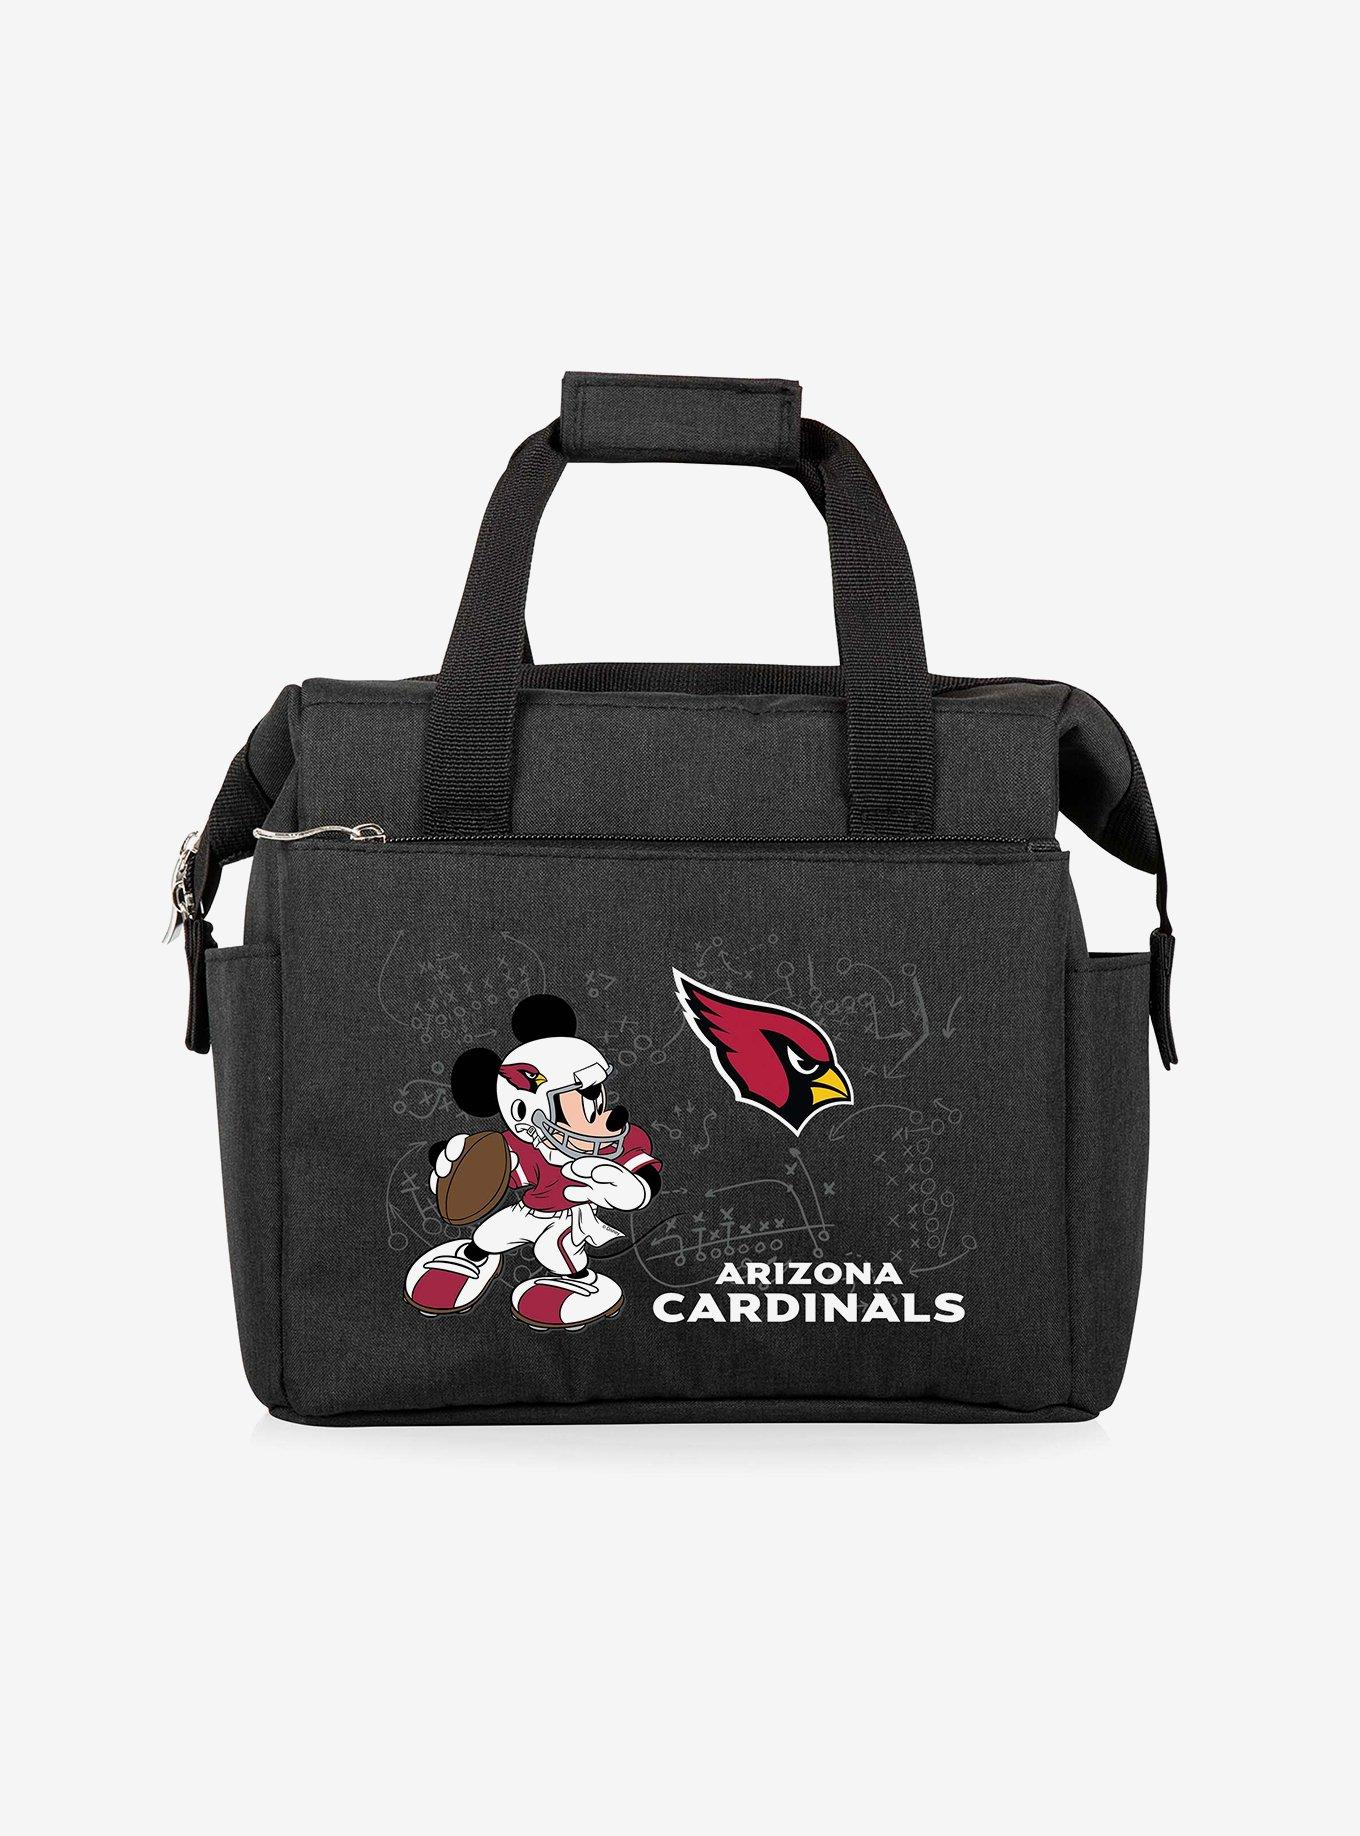 Official Arizona Cardinals Bags, Cardinals Backpacks, Book Bags, Purses,  Cardinals Totes